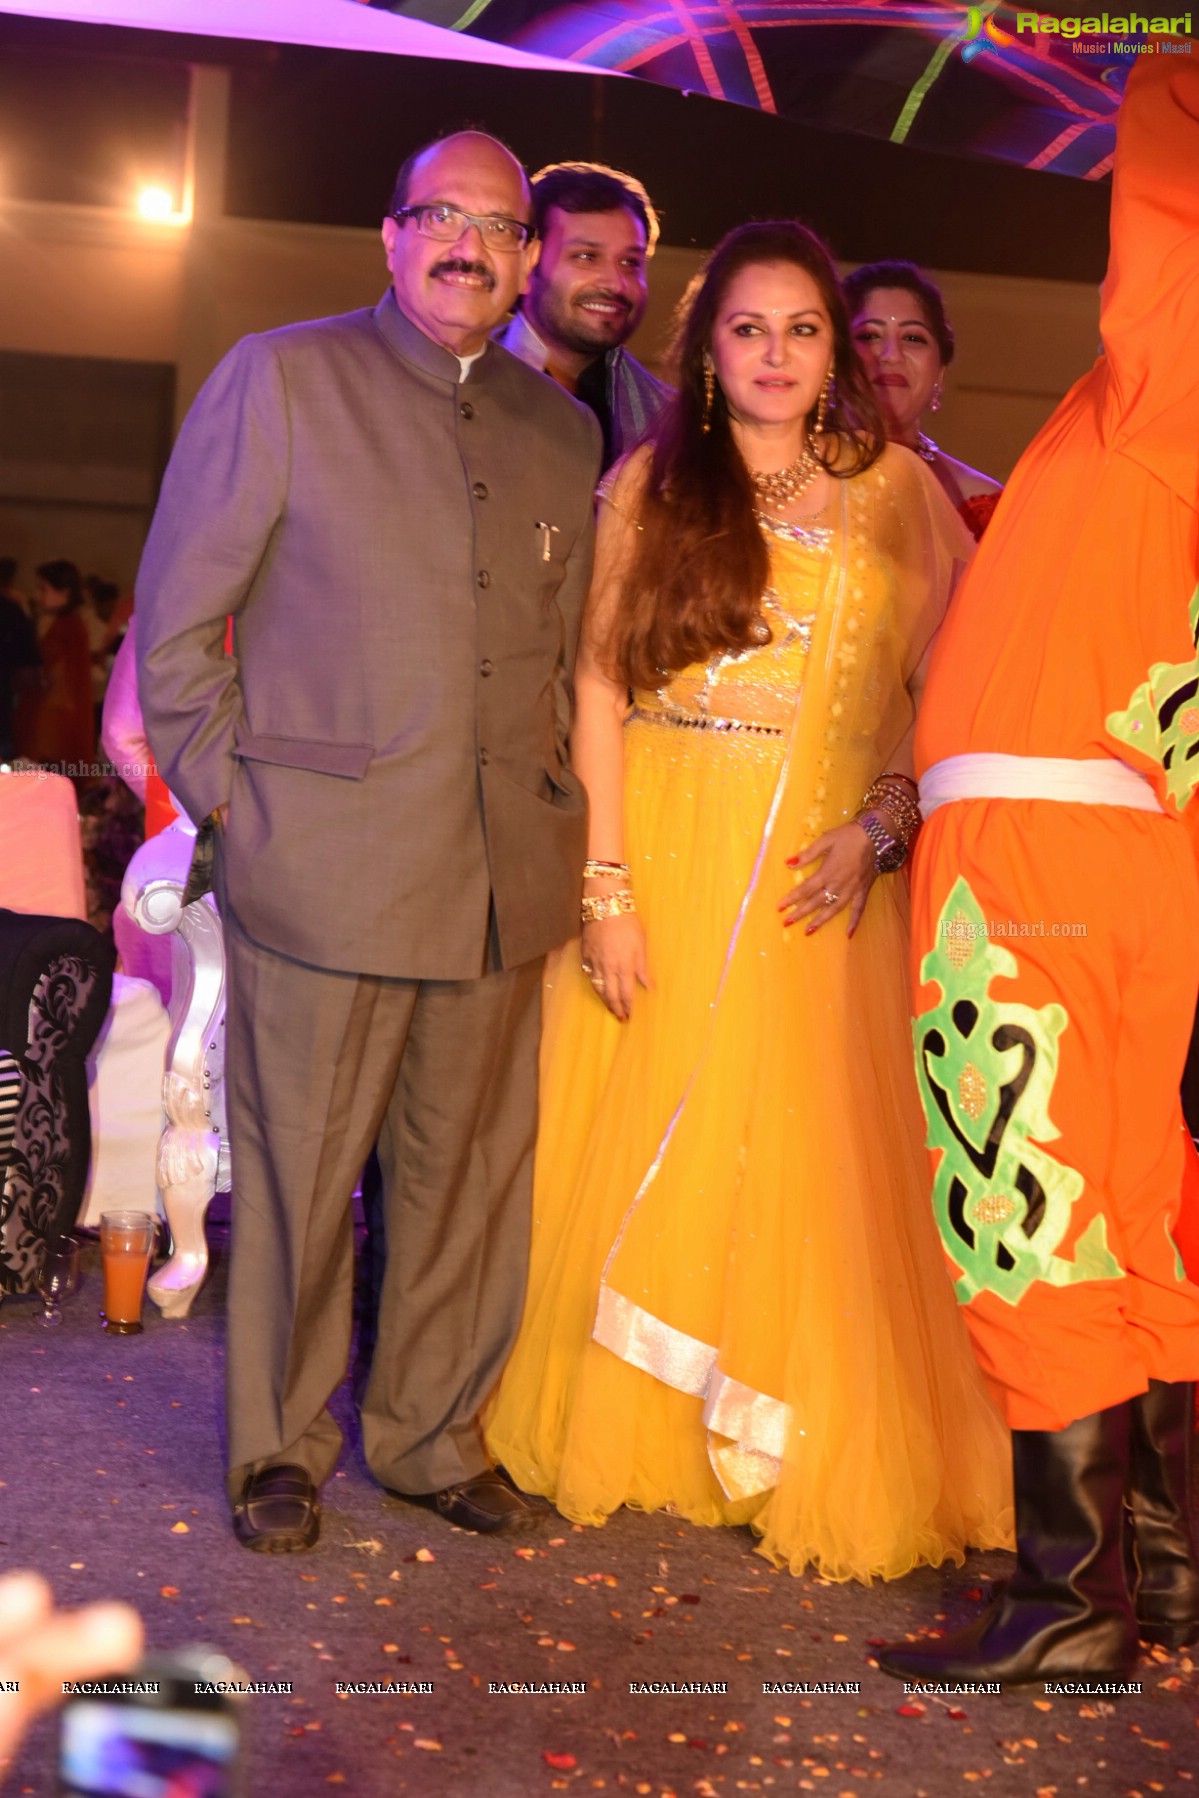 Grand Wedding Sangeet Ceremony of Jaya Prada's Nephew Siddharth-Pravallika Reddy 